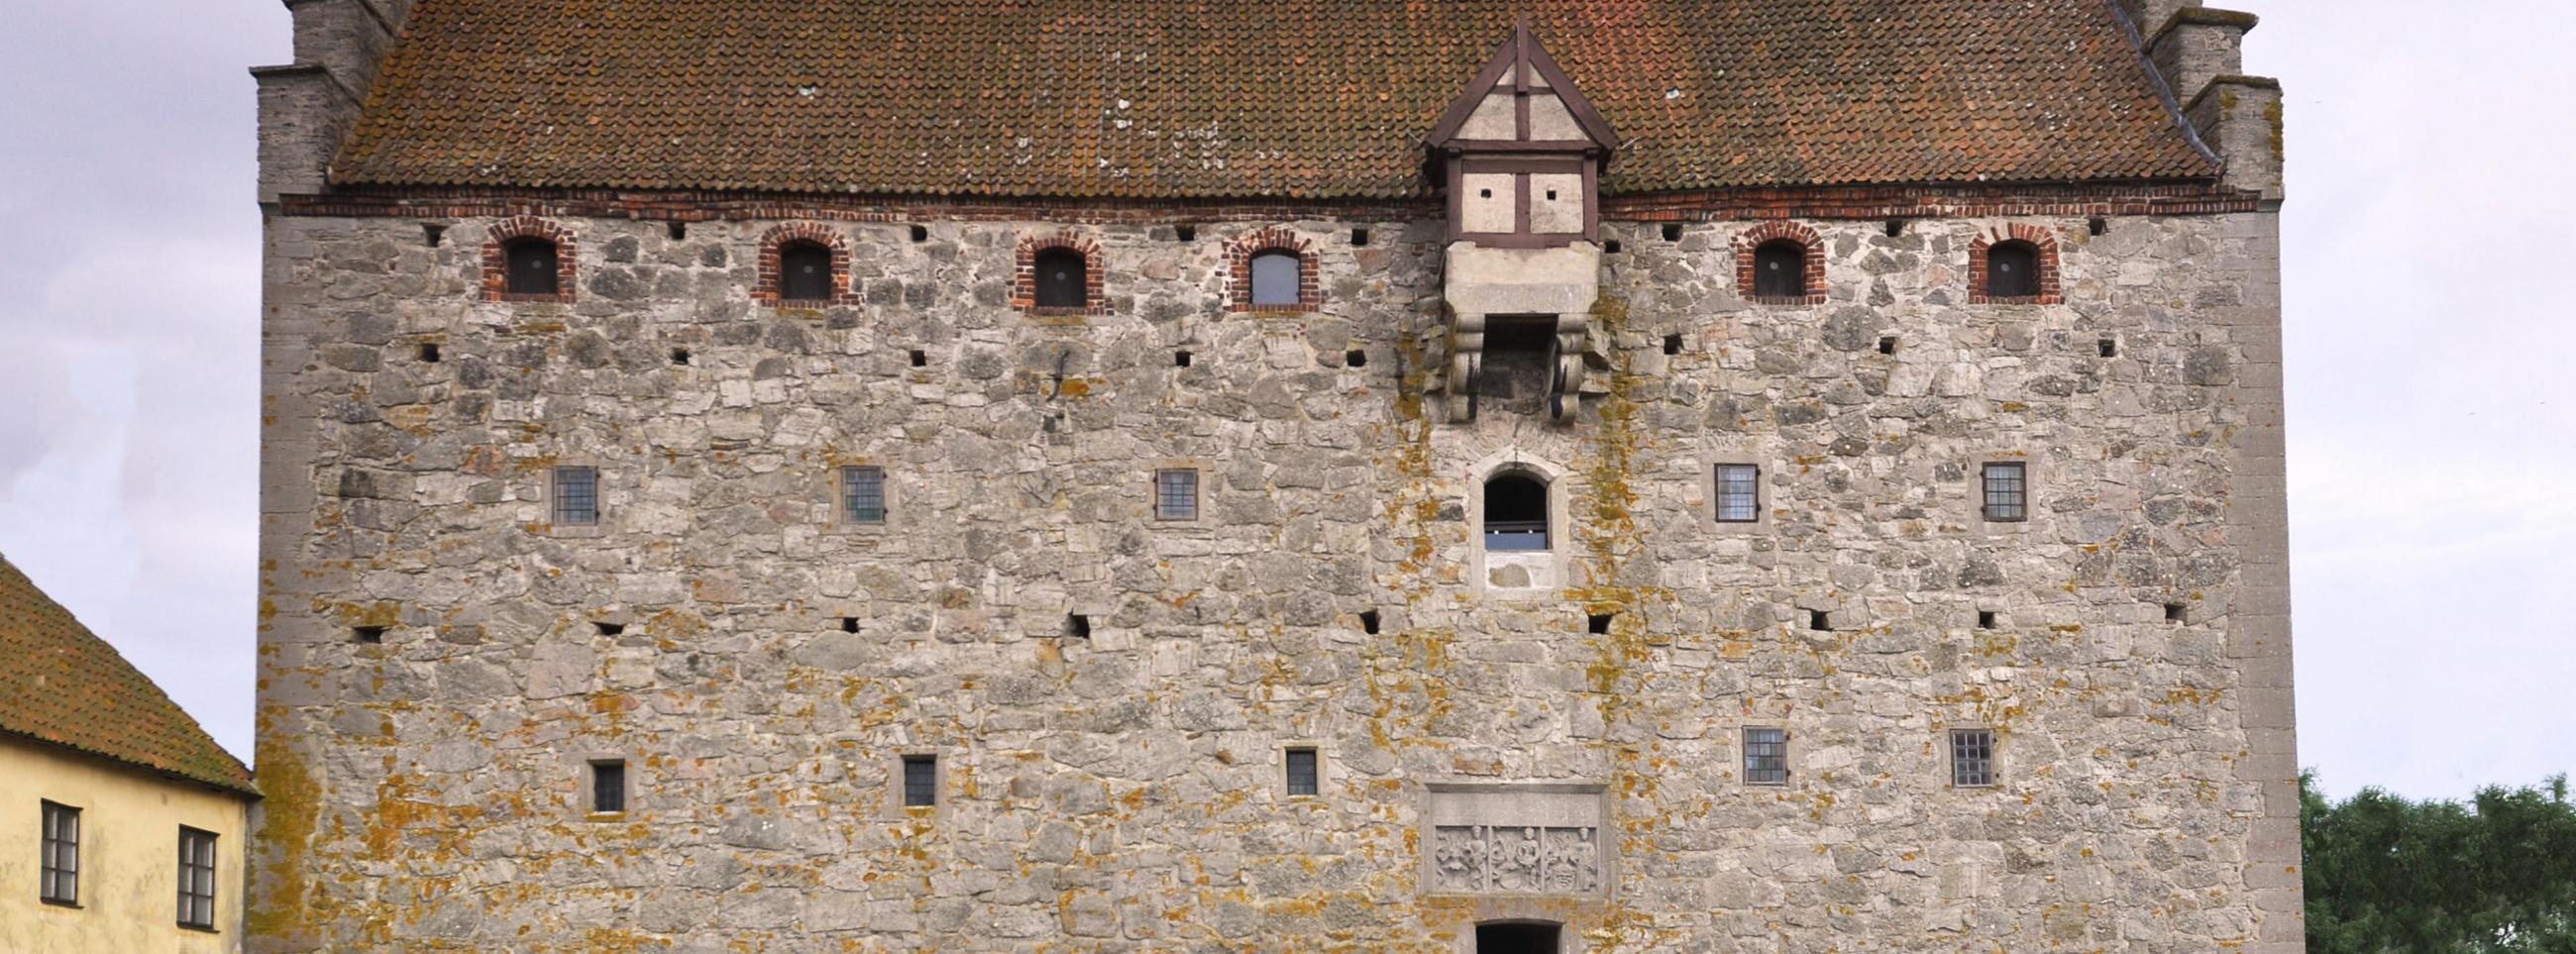 Utsidan av den medeltida borgen i Glimmingehus